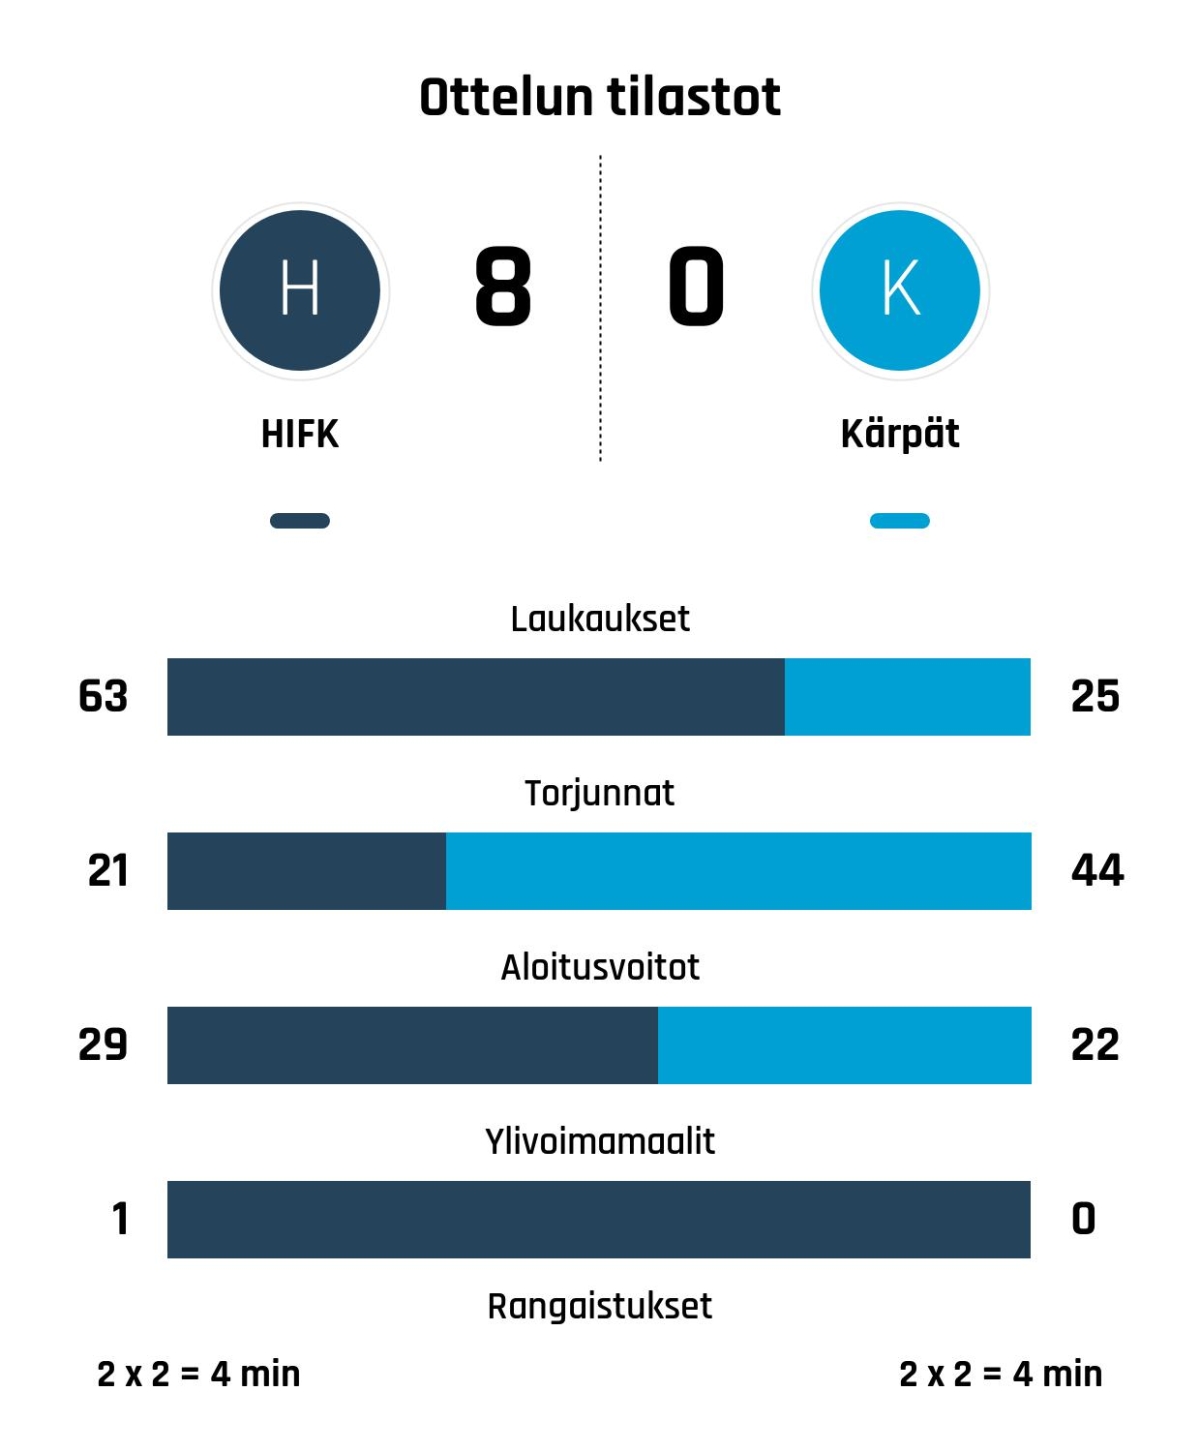 Pejzlova johdatti HIFK:n murskavoittoon Kärpistä